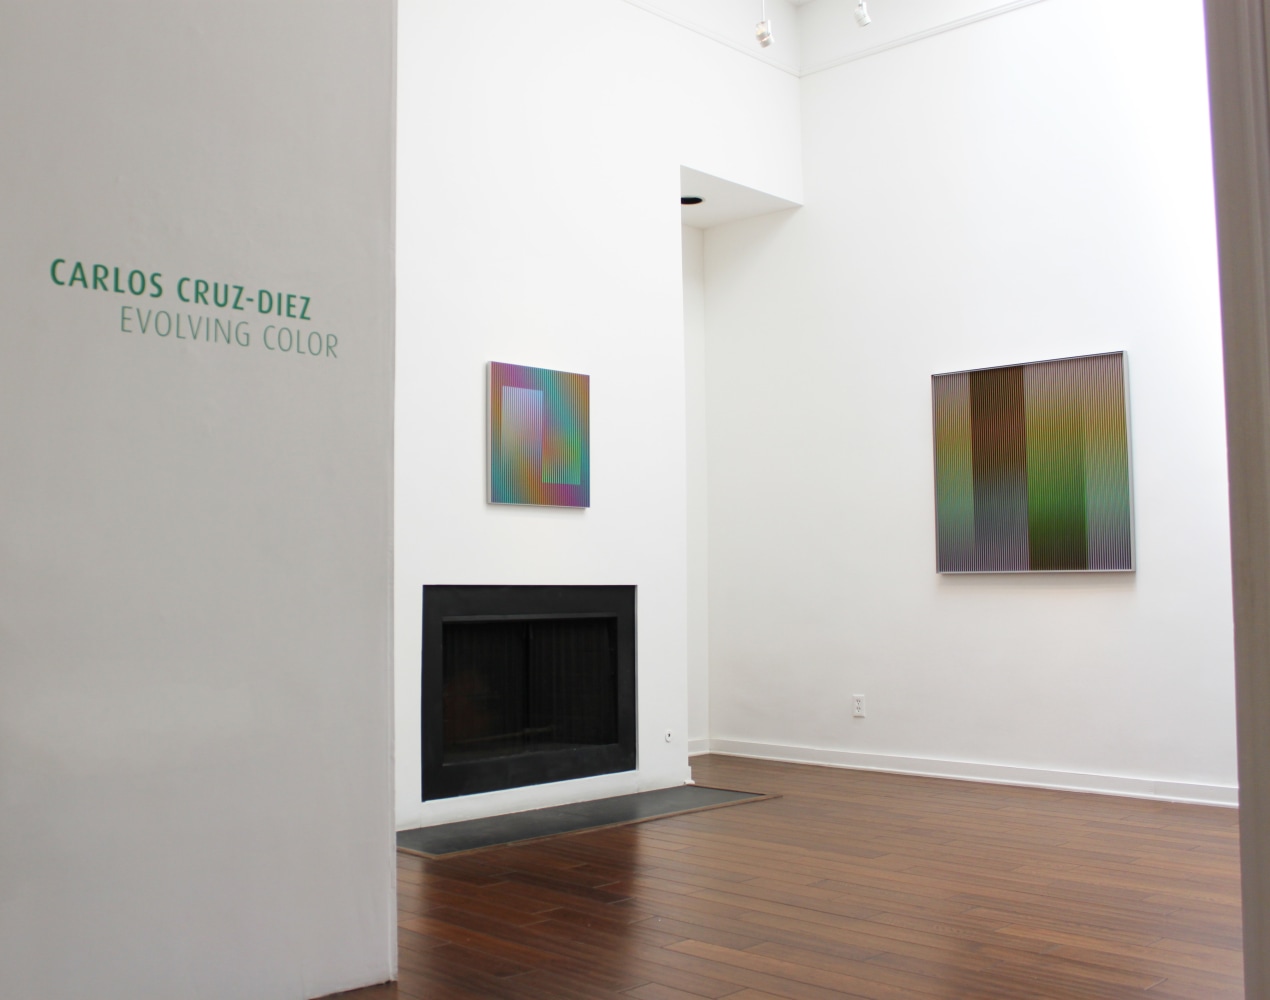 Carlos Cruz-Diez: Evolving Color